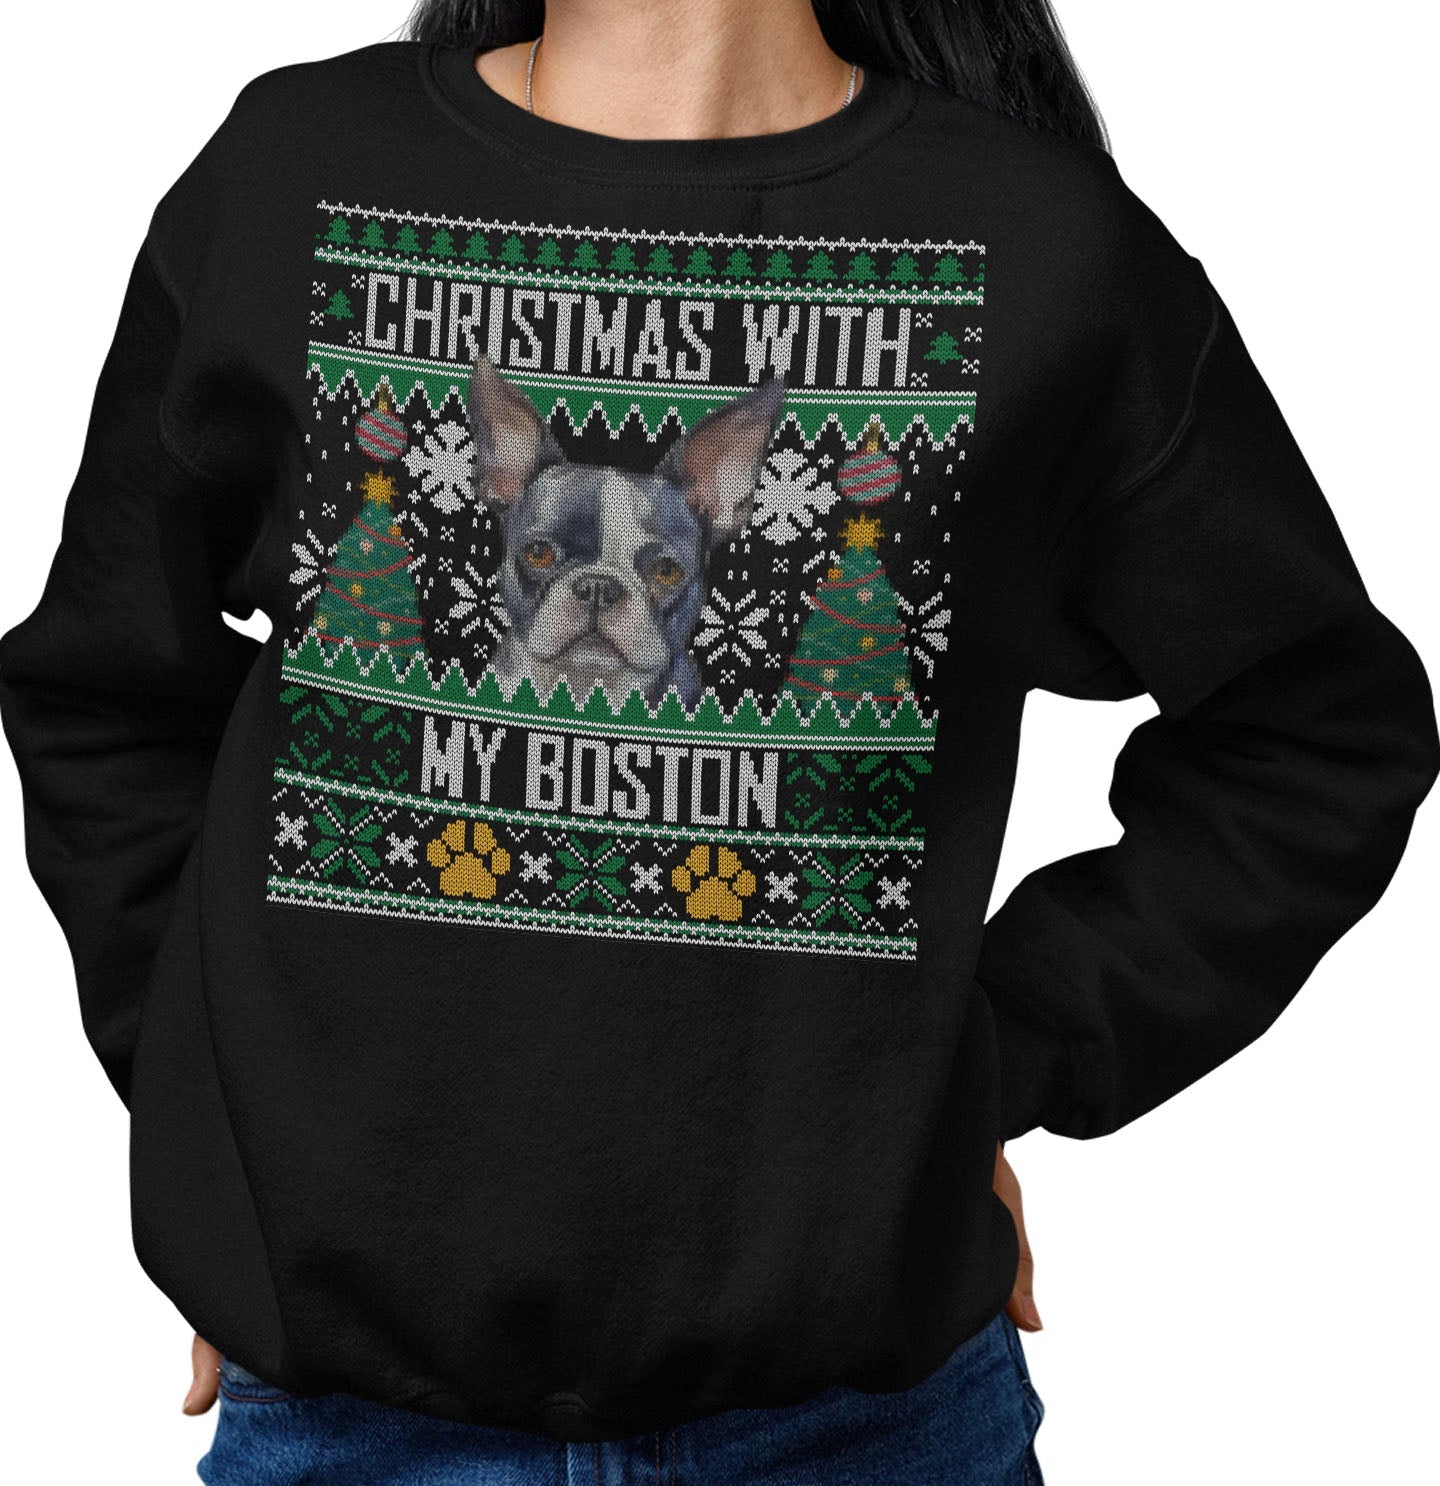 Ugly Sweater Christmas with My Boston Terrier - Adult Unisex Crewneck Sweatshirt